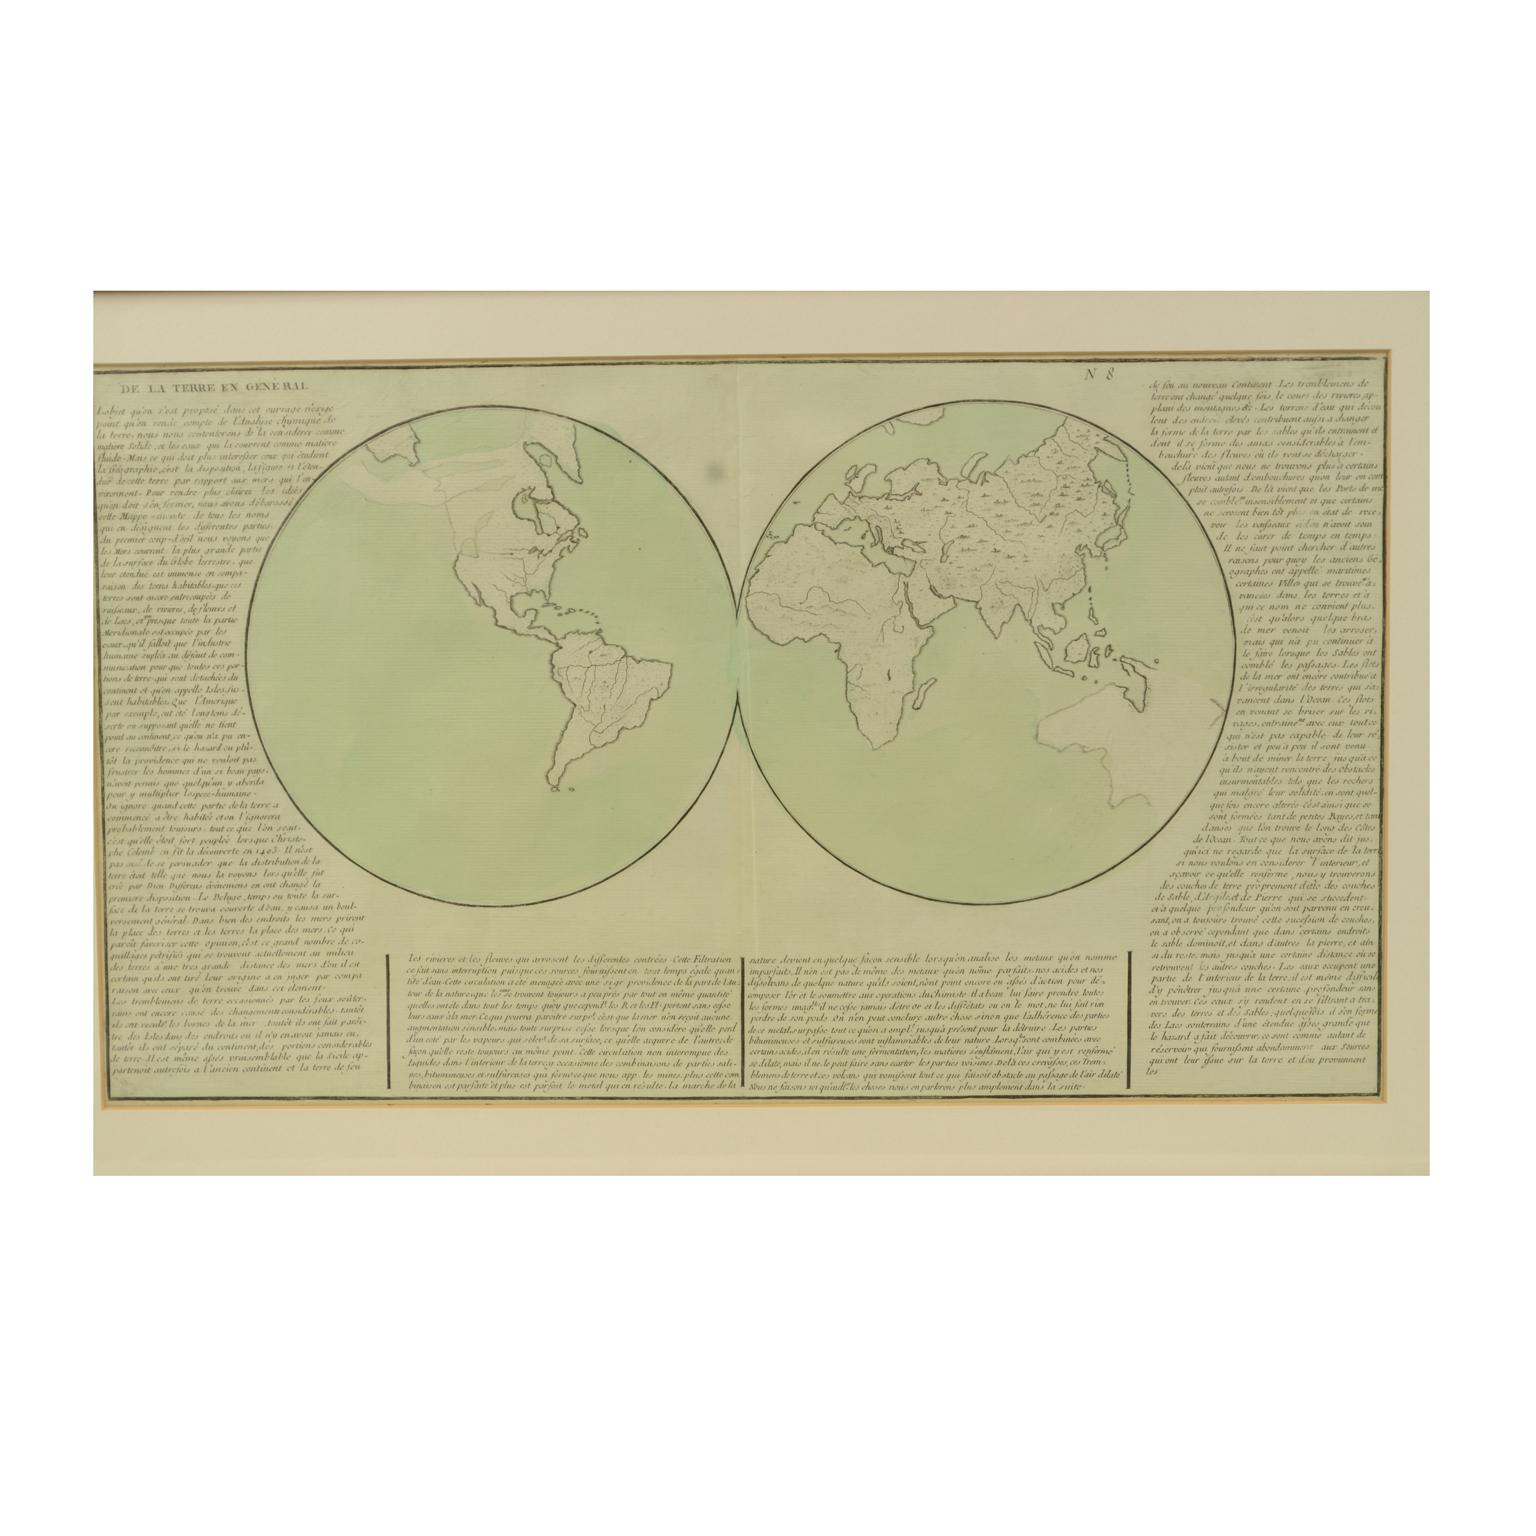 Geografische Karte, auf der die gesamte Erdoberfläche in zwei Teile unterteilt ist, die den beiden Hemisphären oder Globen entsprechen, und die die Erde im Allgemeinen darstellt. Ausführliche Erklärung auf Französisch. Druck auf Radierpapier auf